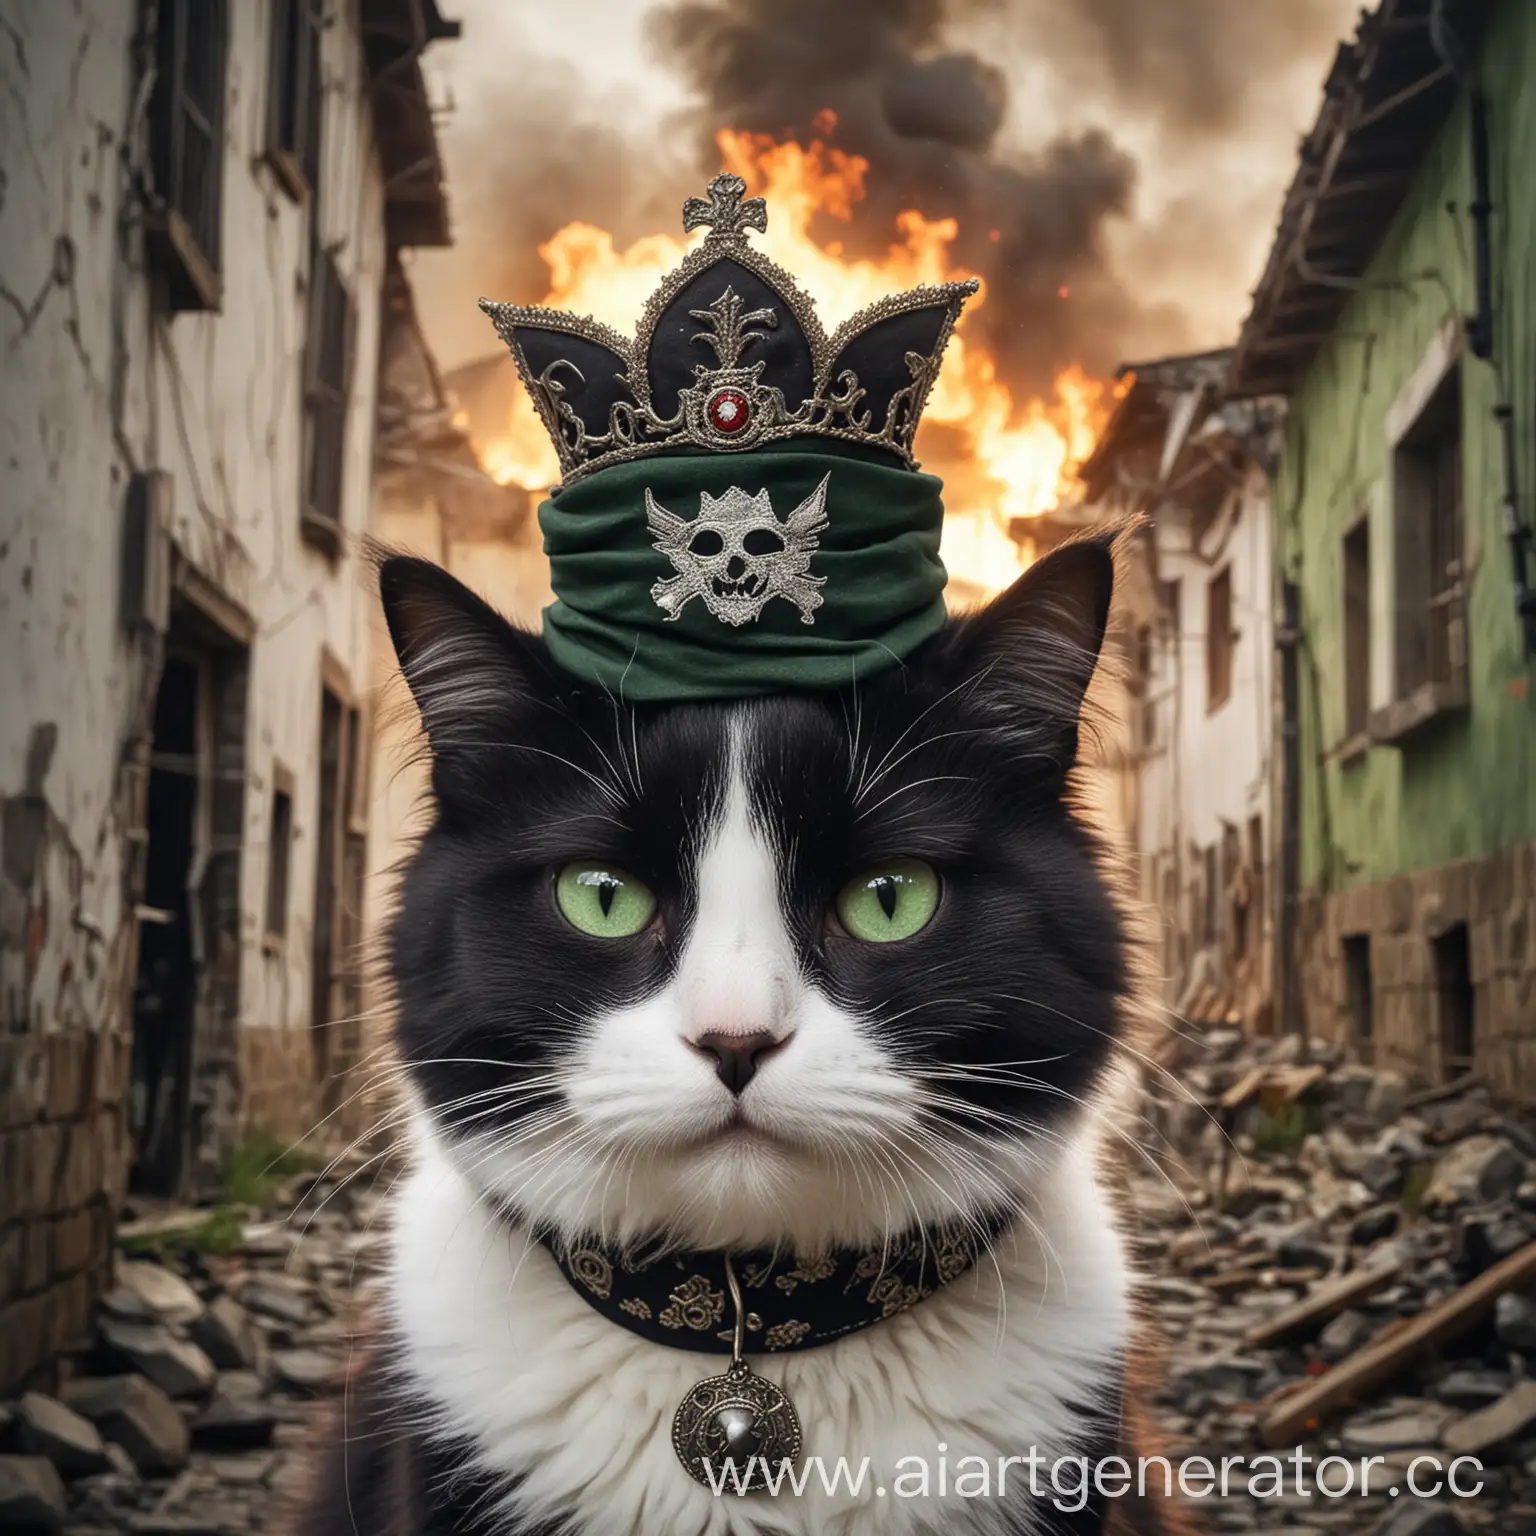 Черно-белая пушистая кошка с зелеными глазами, которая является революционером Болгарии. Черные вставки у нее небольшие, морда на 80 процентов белая. У нее должен быть патронаш,  пиратская повязка на глазе и злое выражение морды. На фоне - горящие здания. И болгарская корона на голове